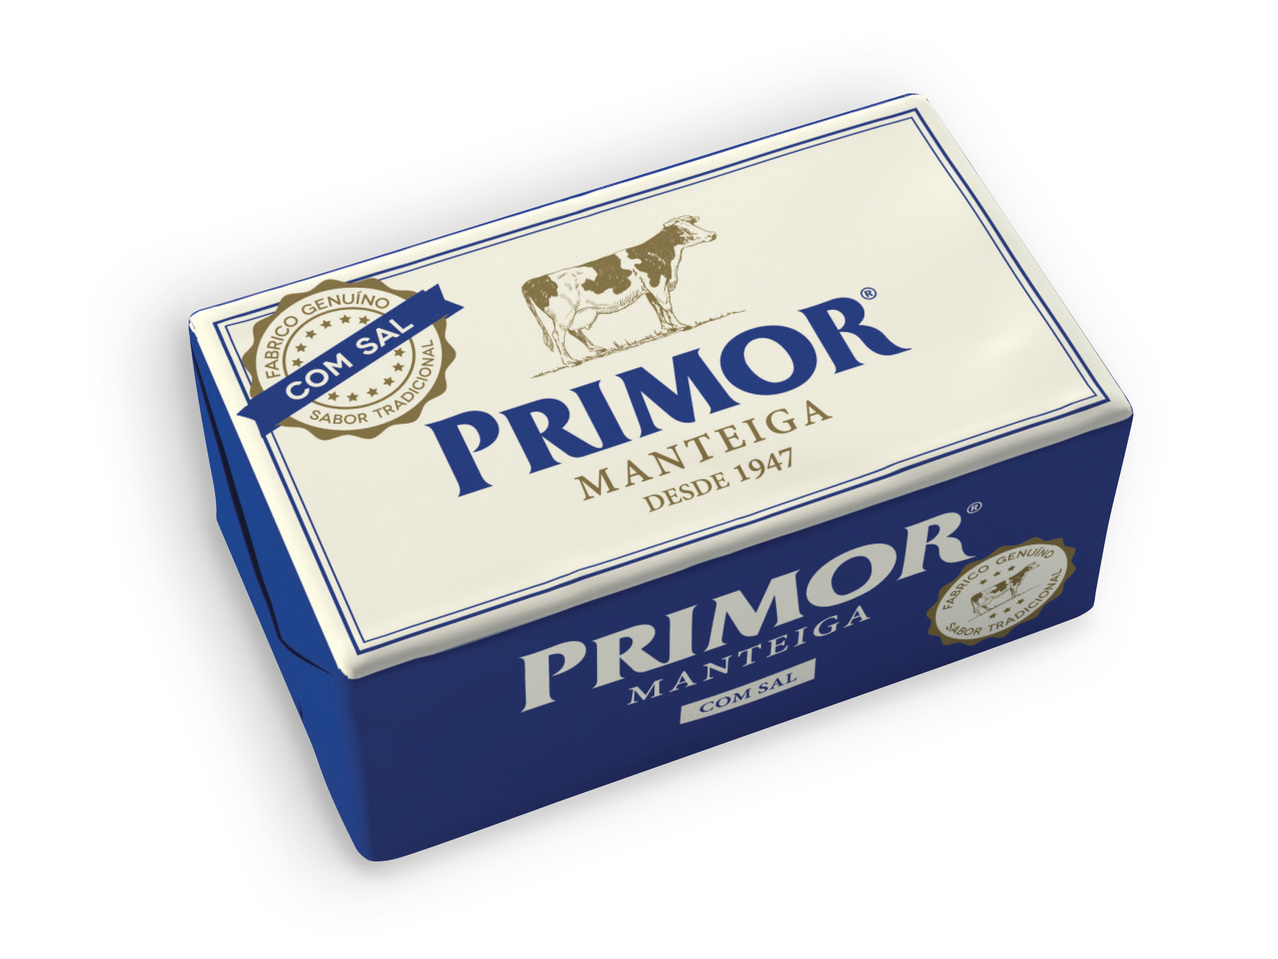 PRIMOR(R) Manteiga